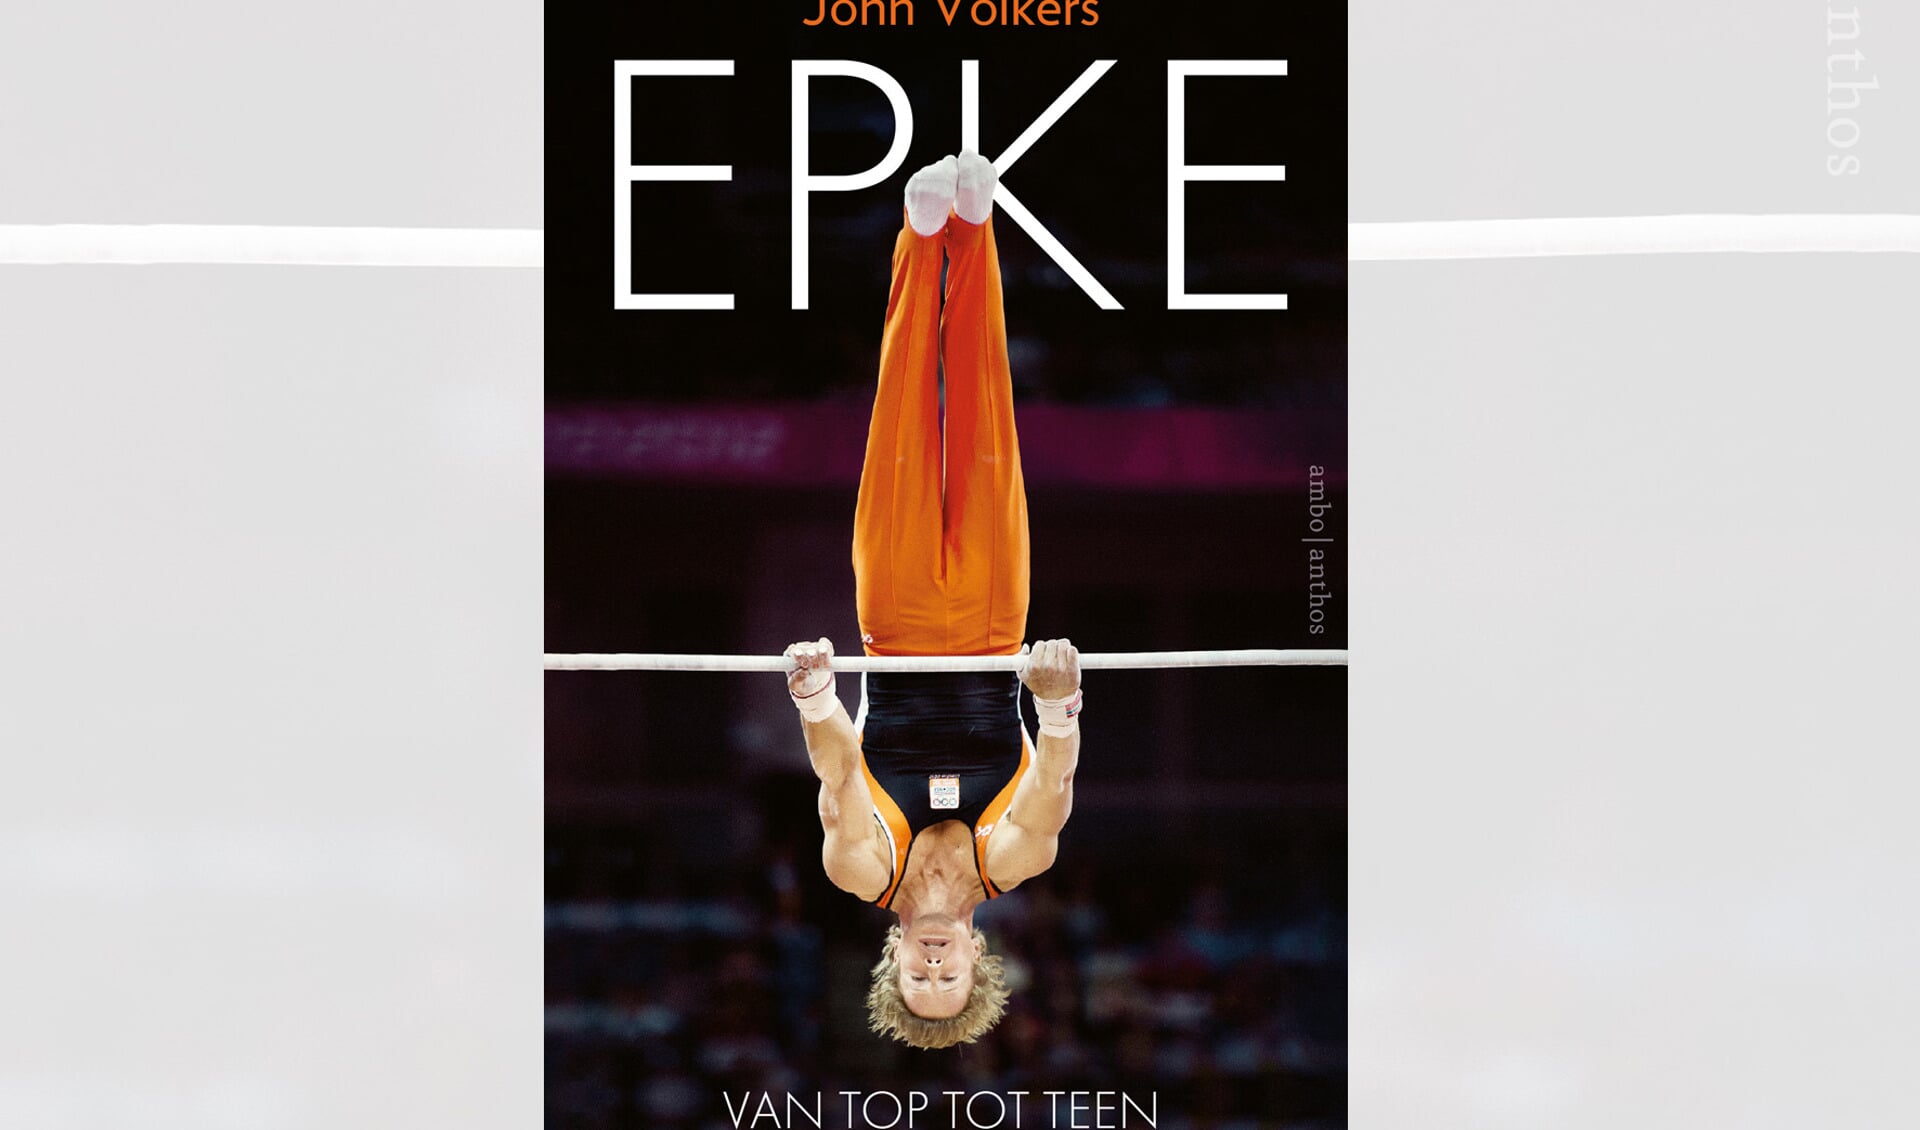 Biografie Epke Zonderland 'Epke. Van top tot teen' door John Volkers